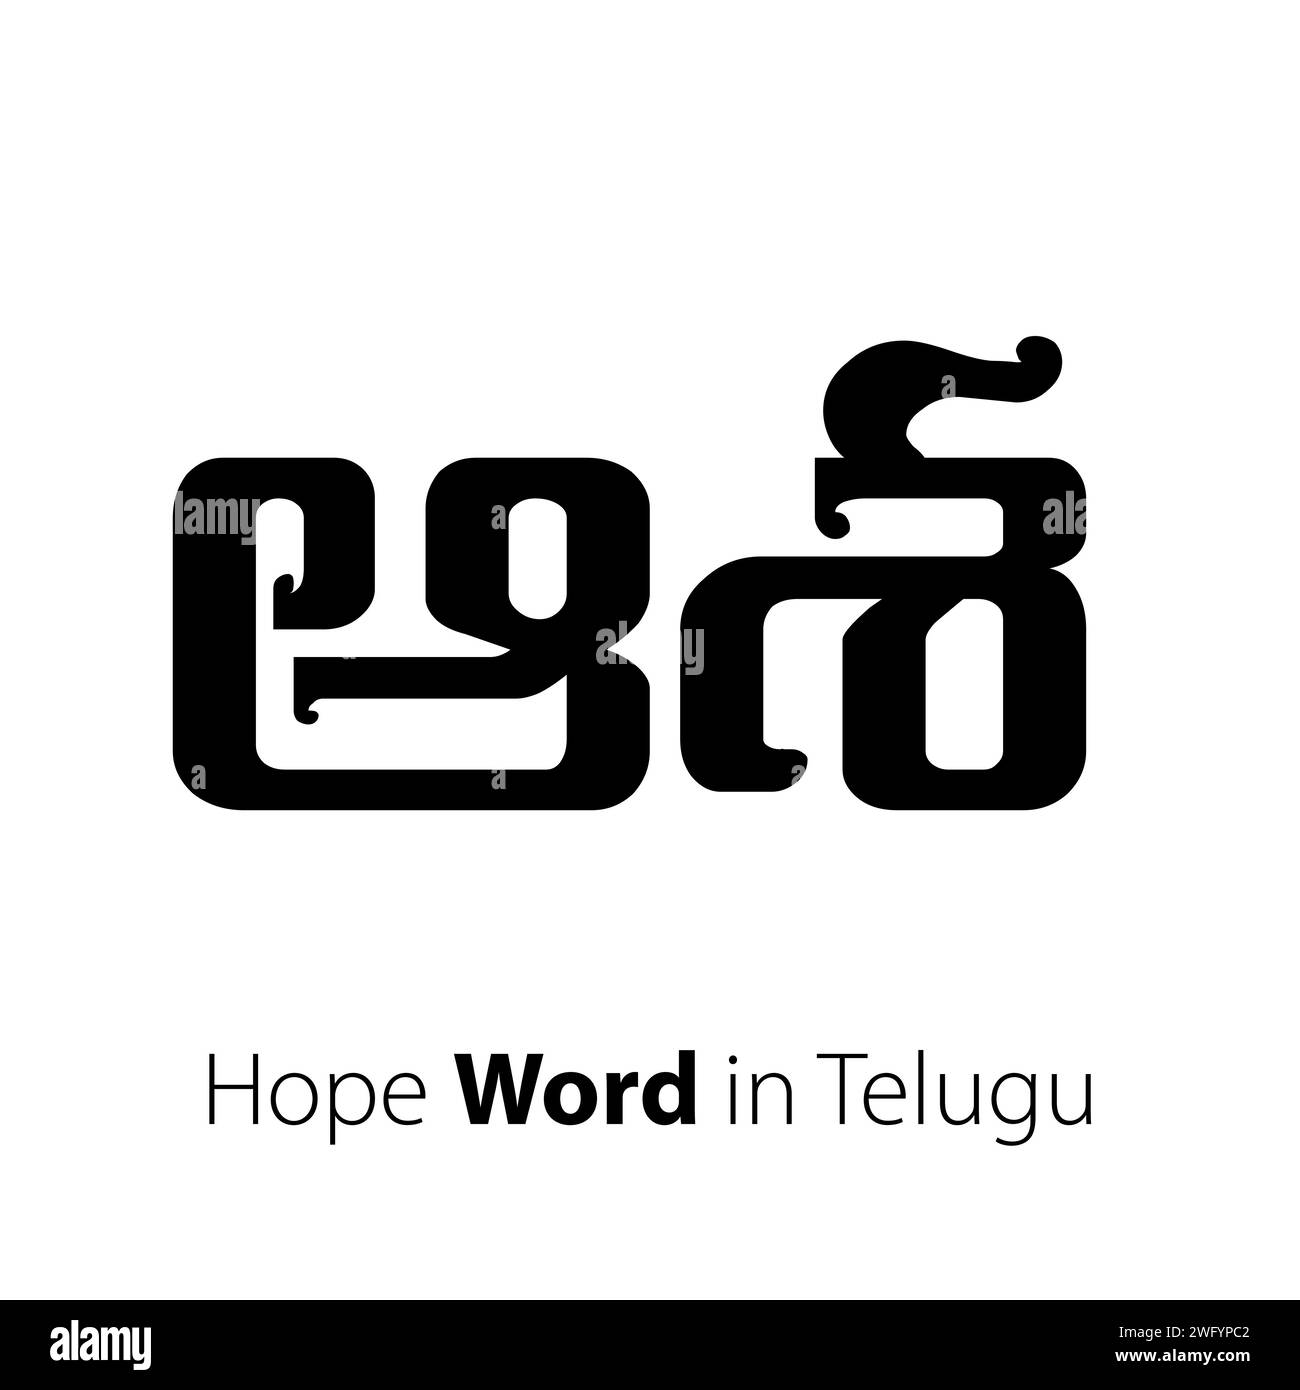 Questo vettore è per coloro che vogliono speranza nella lingua telugu, un vettore di parole "speranza" incapsula l'ottimismo, l'anticipazione e il positivo. Illustrazione Vettoriale